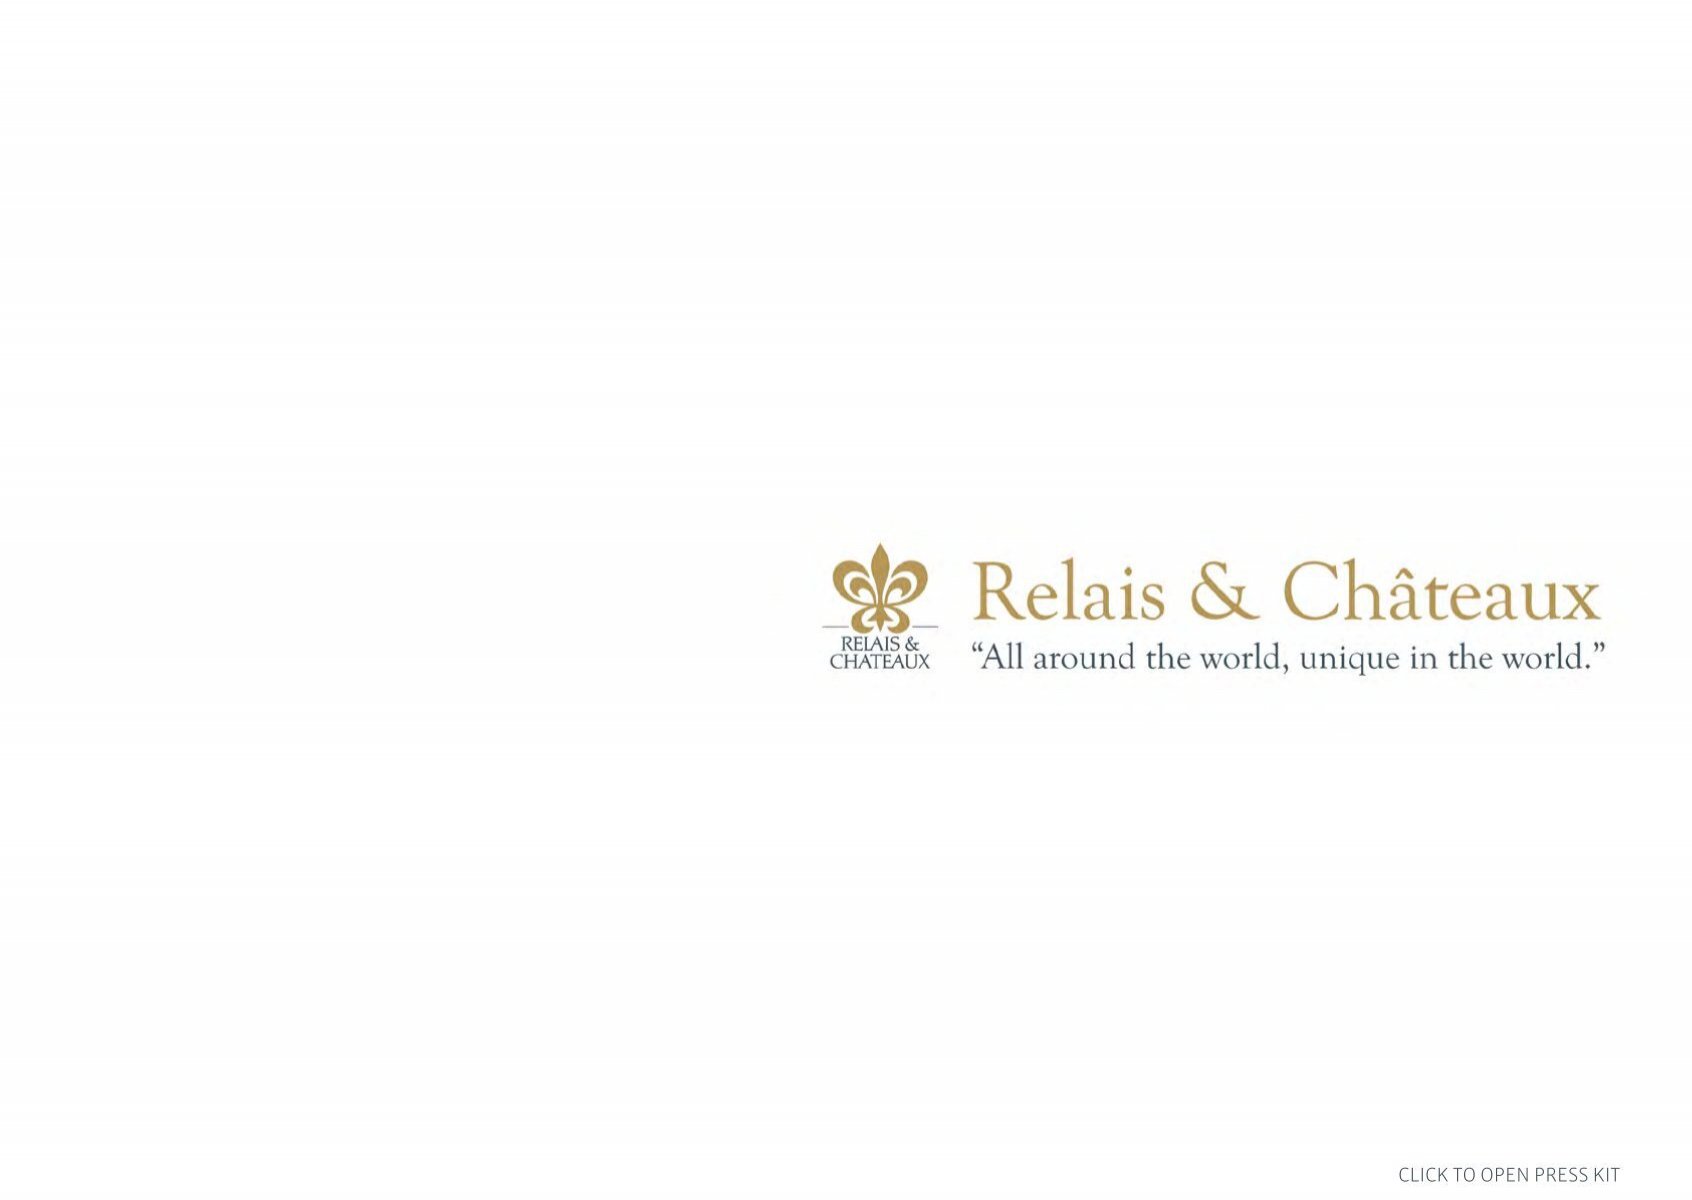 MOET & CHANDON: Relais & Châteaux partner